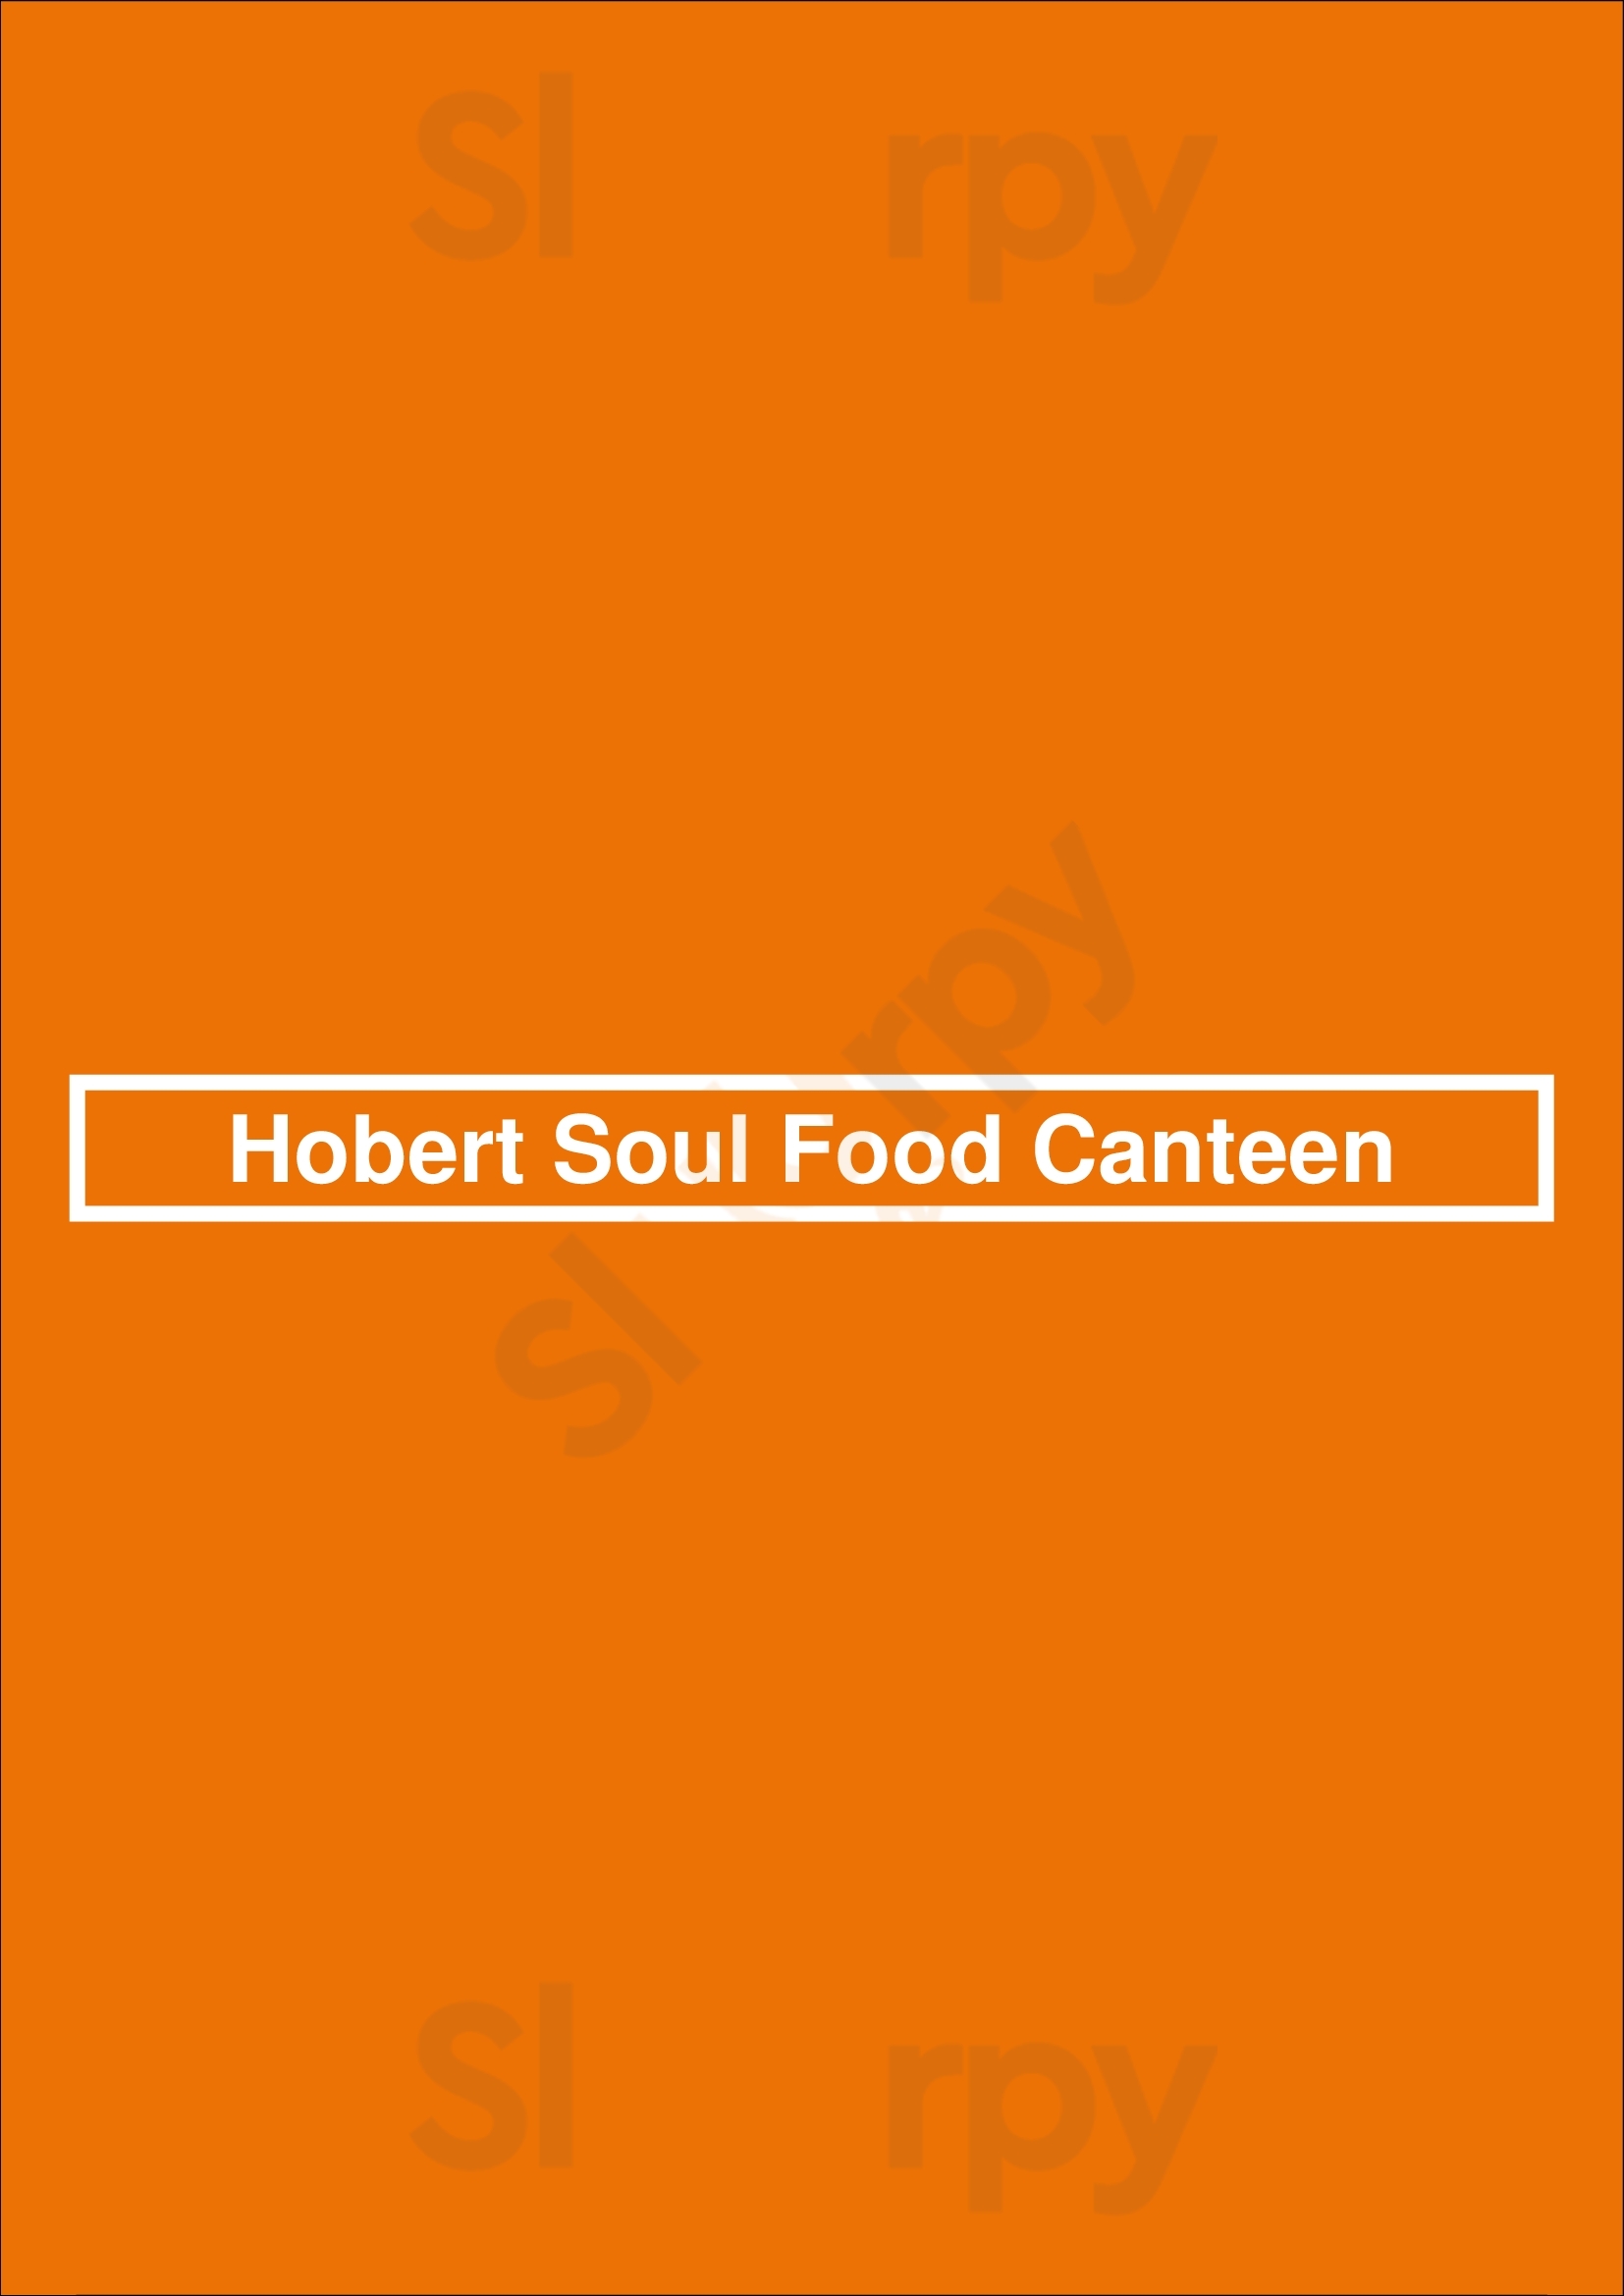 Hobert Soul Food Canteen Fort Worth Menu - 1